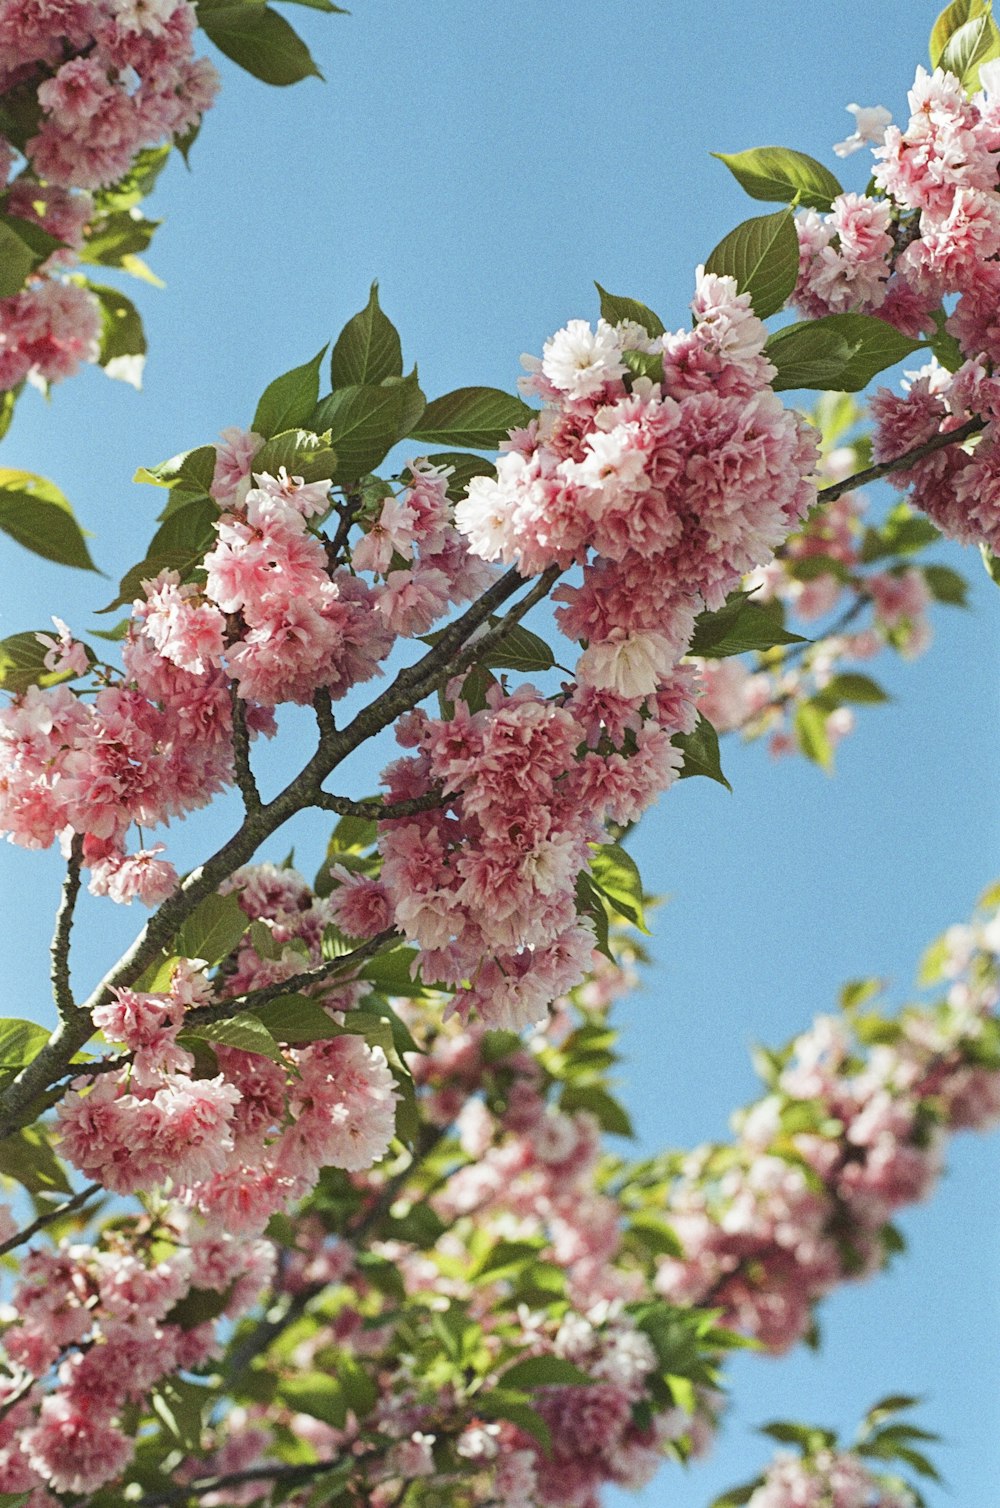 fiori rosa e bianchi sul ramo dell'albero